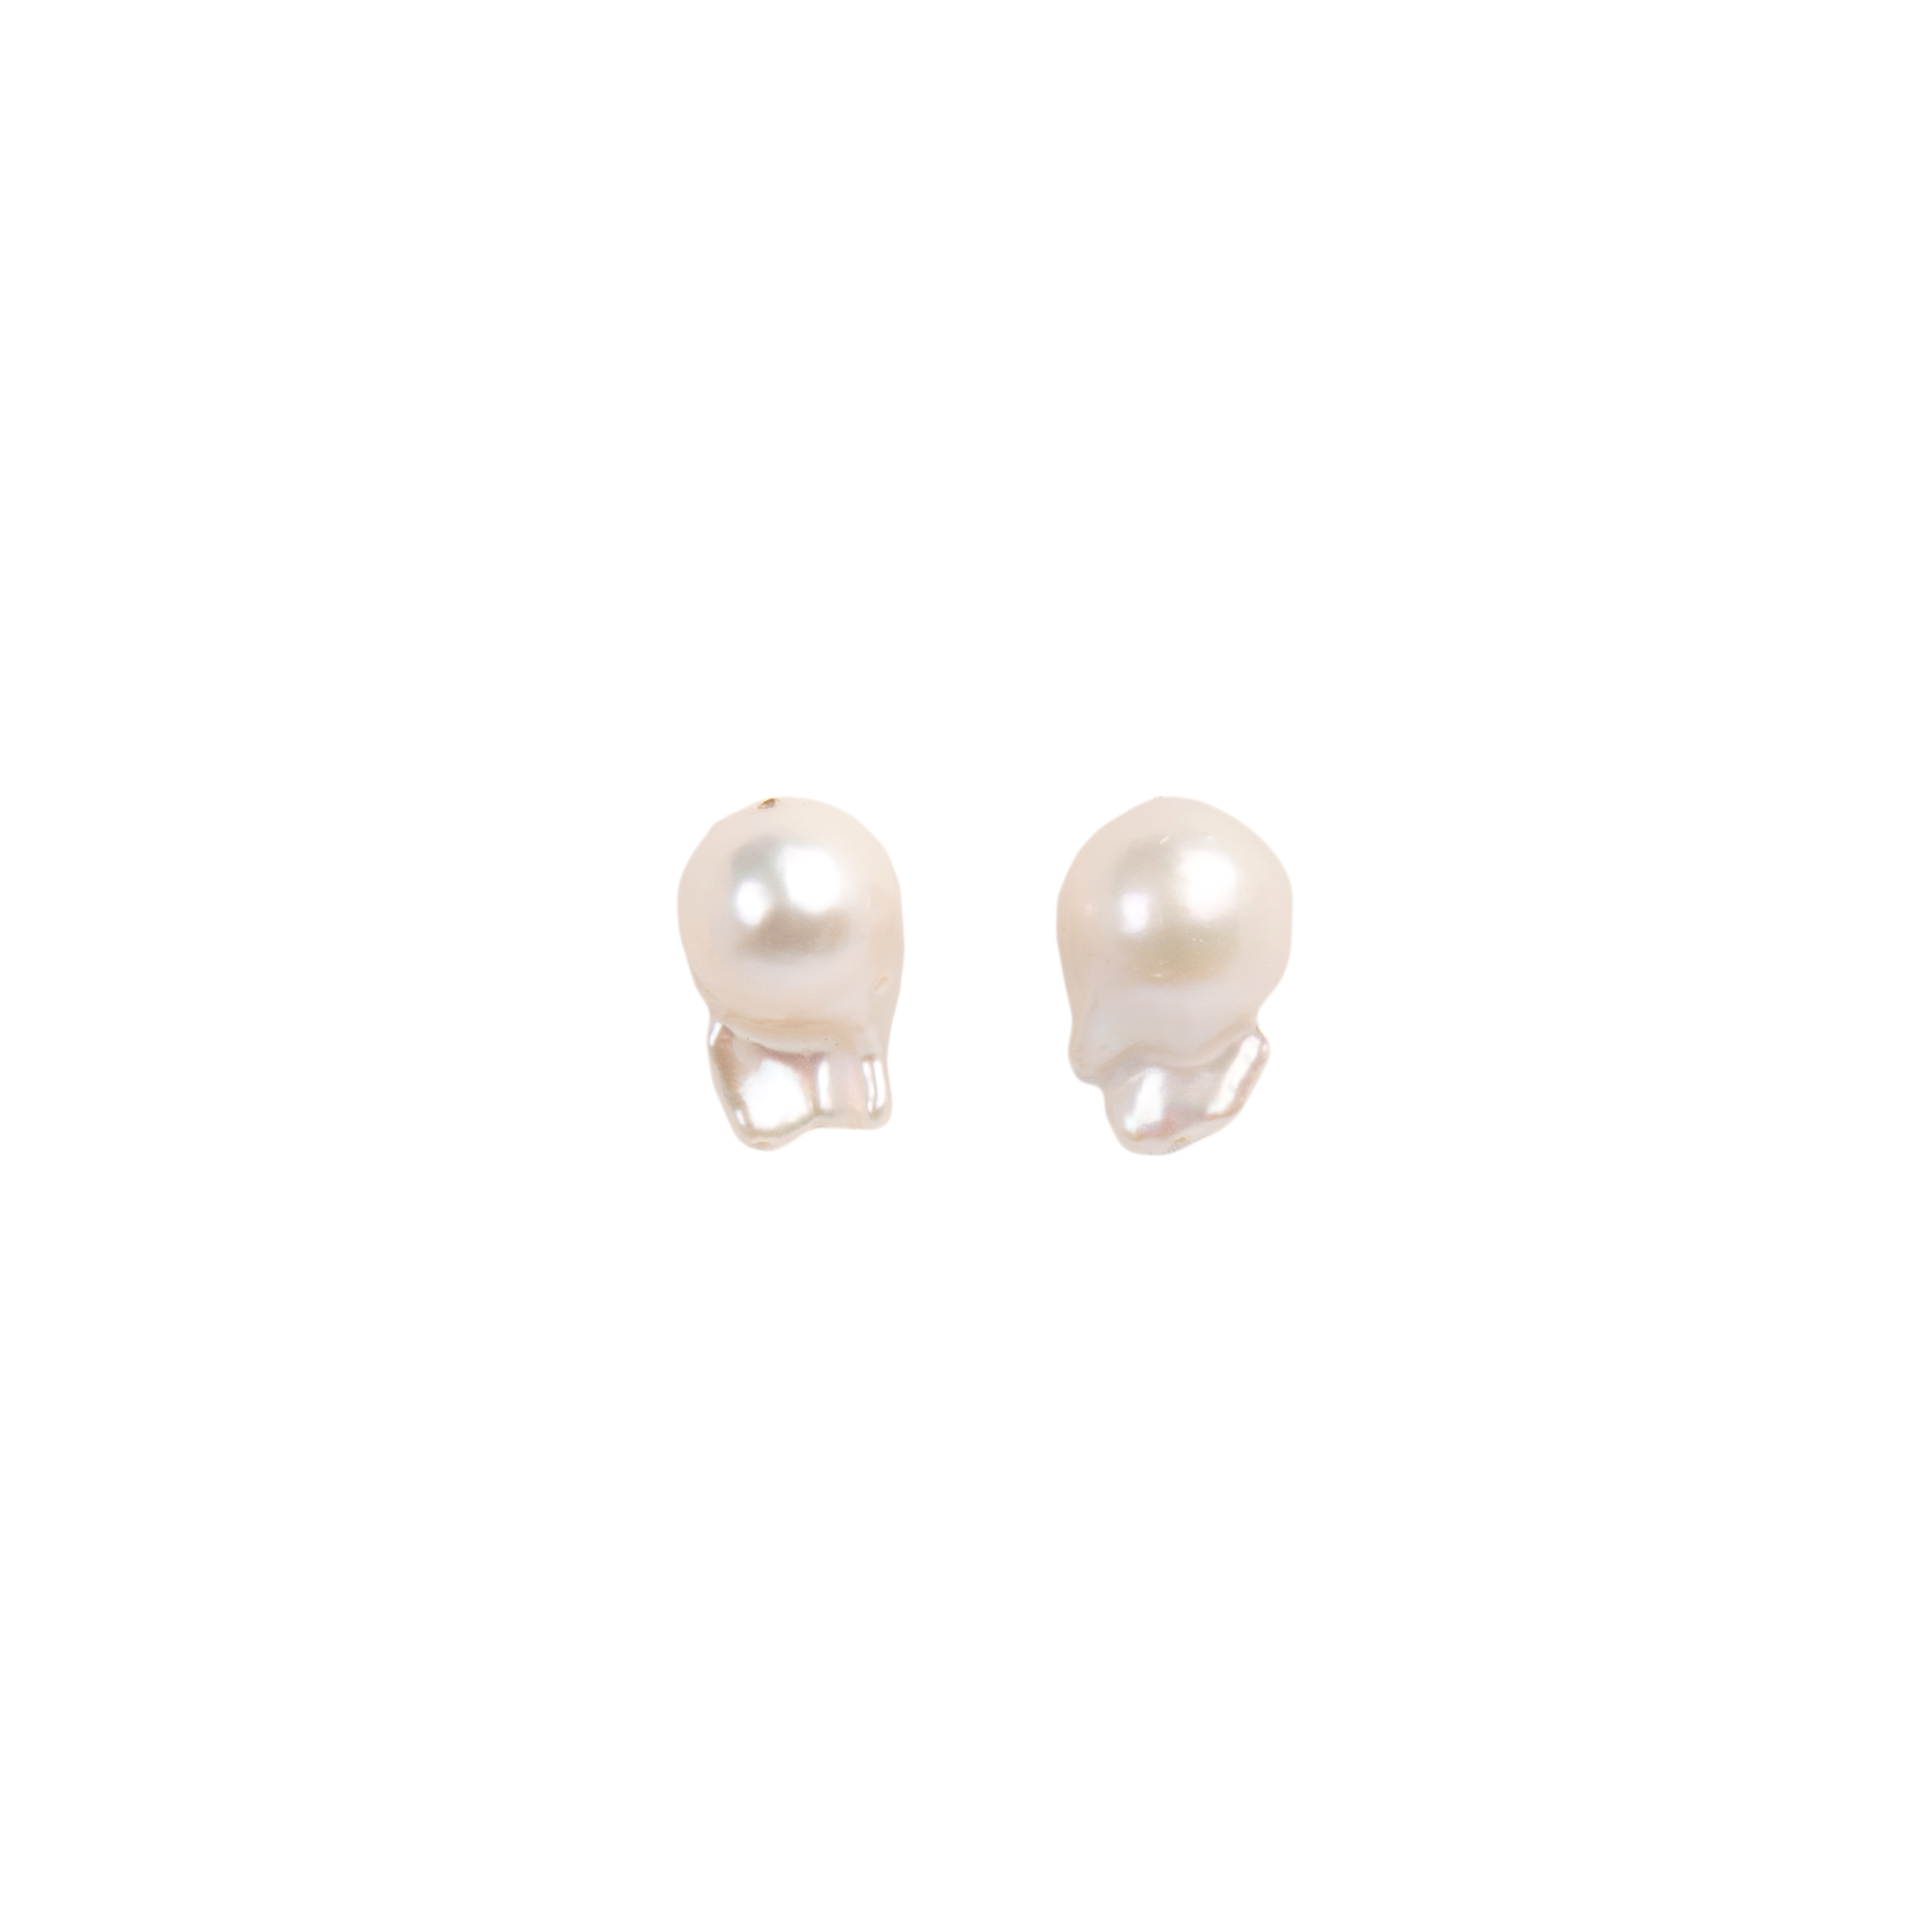 Barroca Earrings #1 (19-20mm) - White Pearl Earrings TARBAY   